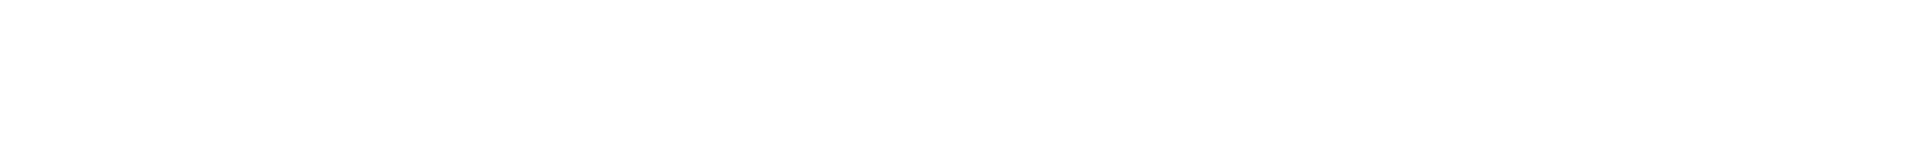 banner-bottom-shape